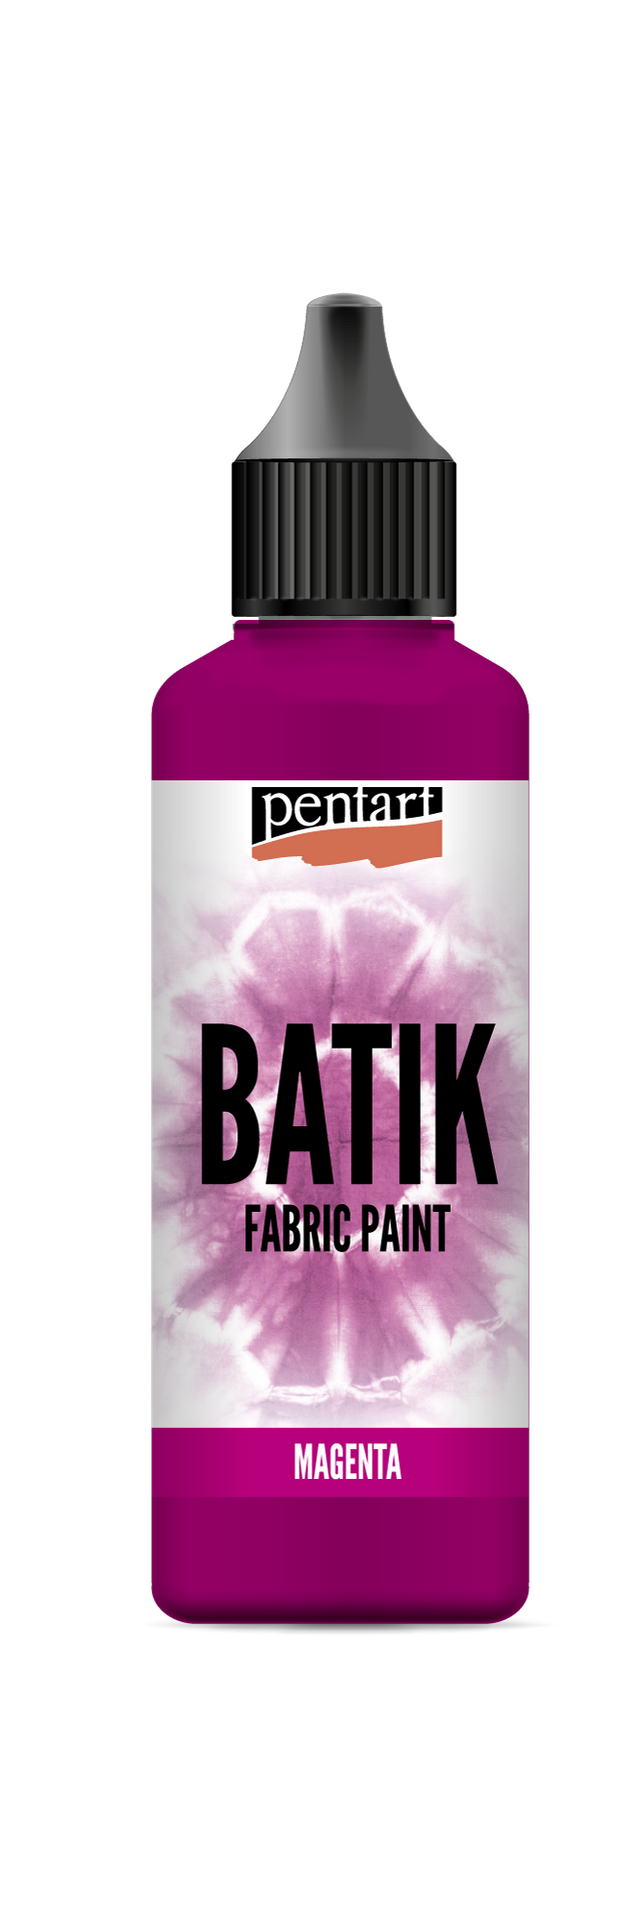 Pentart Batik Fabric Paint